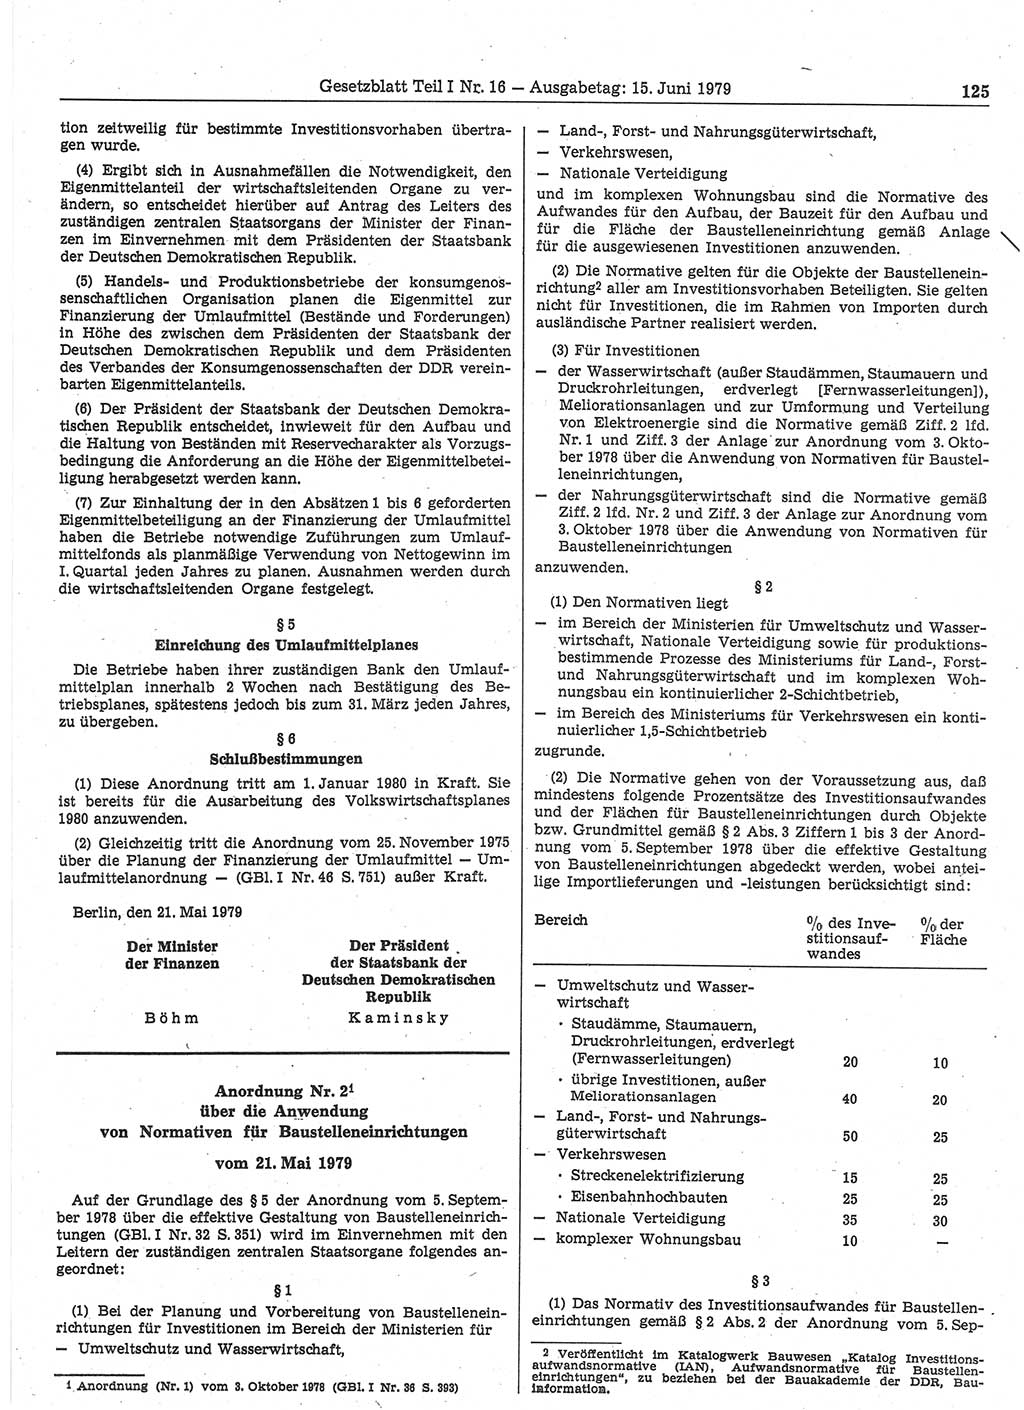 Gesetzblatt (GBl.) der Deutschen Demokratischen Republik (DDR) Teil Ⅰ 1979, Seite 125 (GBl. DDR Ⅰ 1979, S. 125)